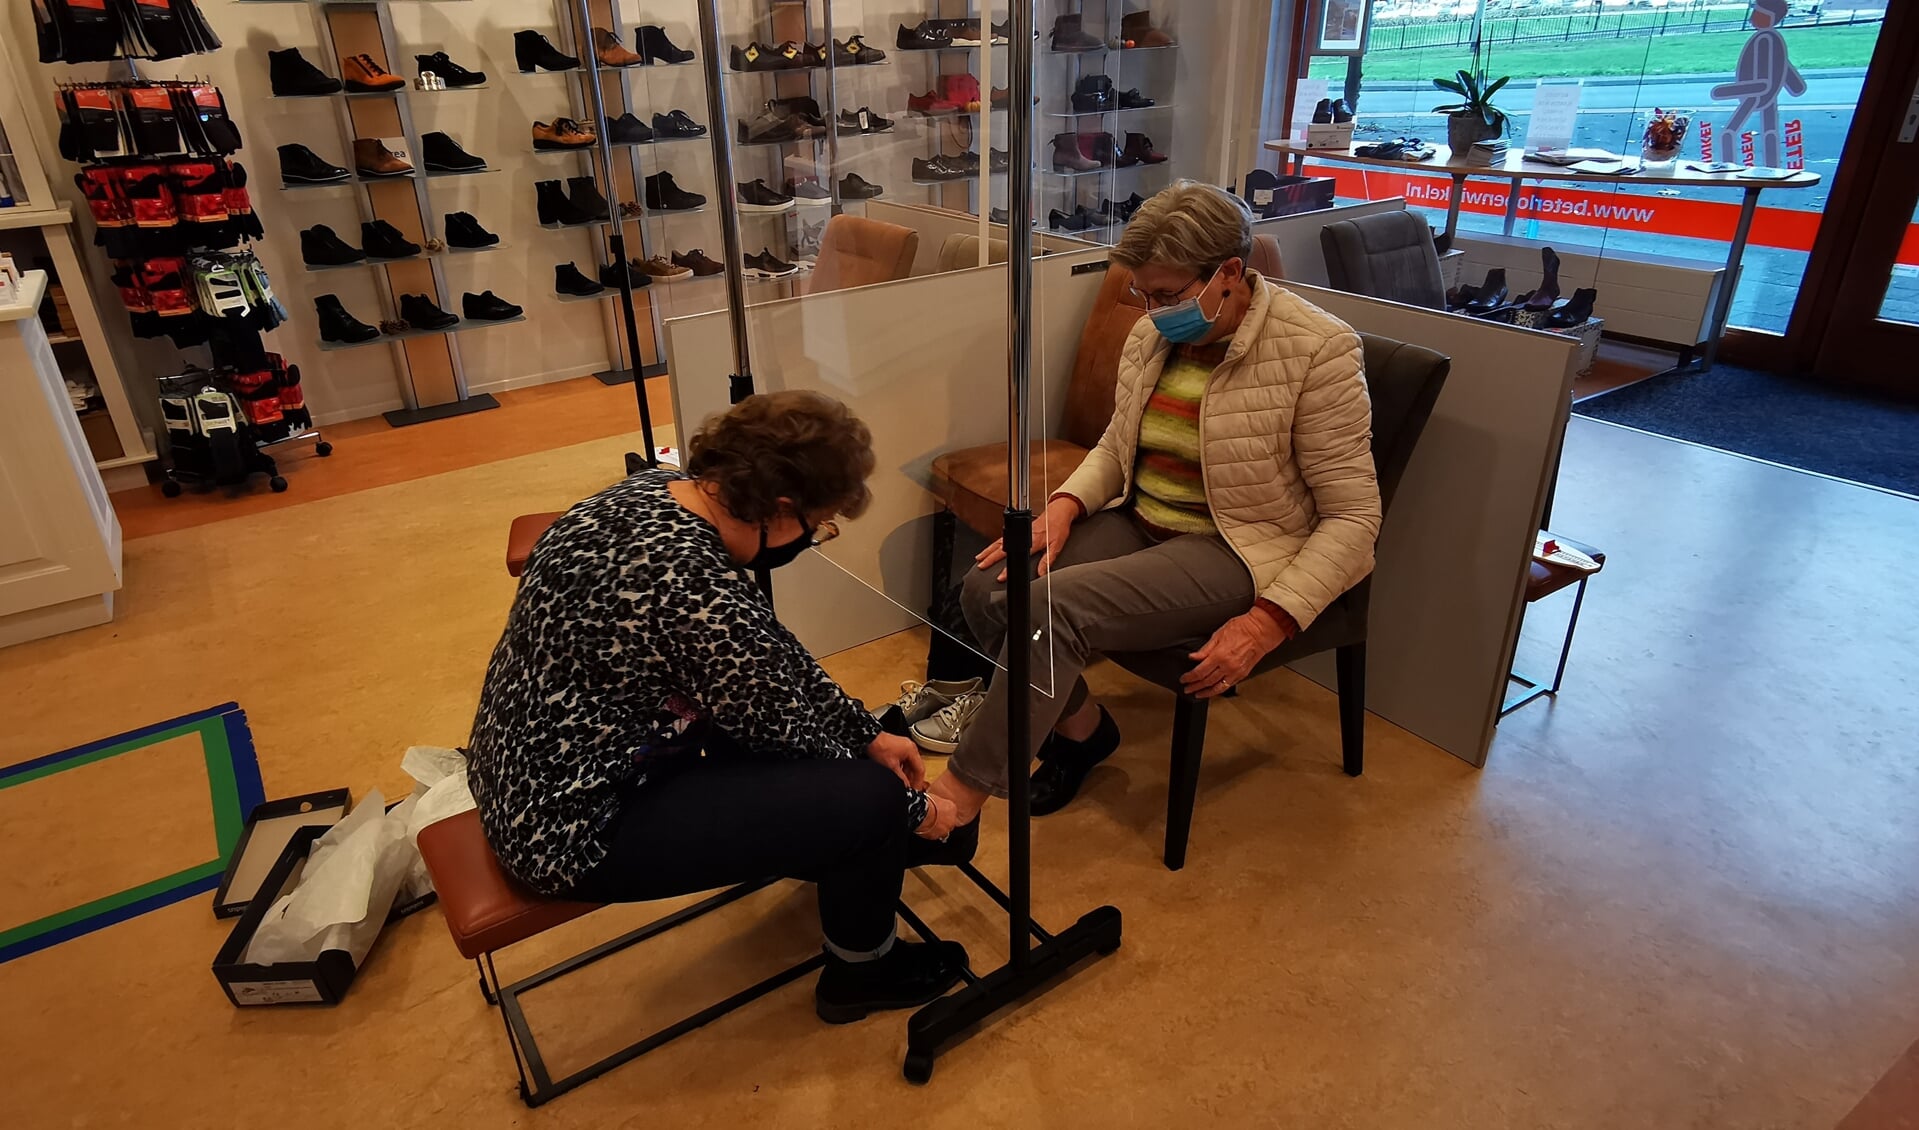 Schoenen kopen kan geheel veilig in de Beterlopenwinkel